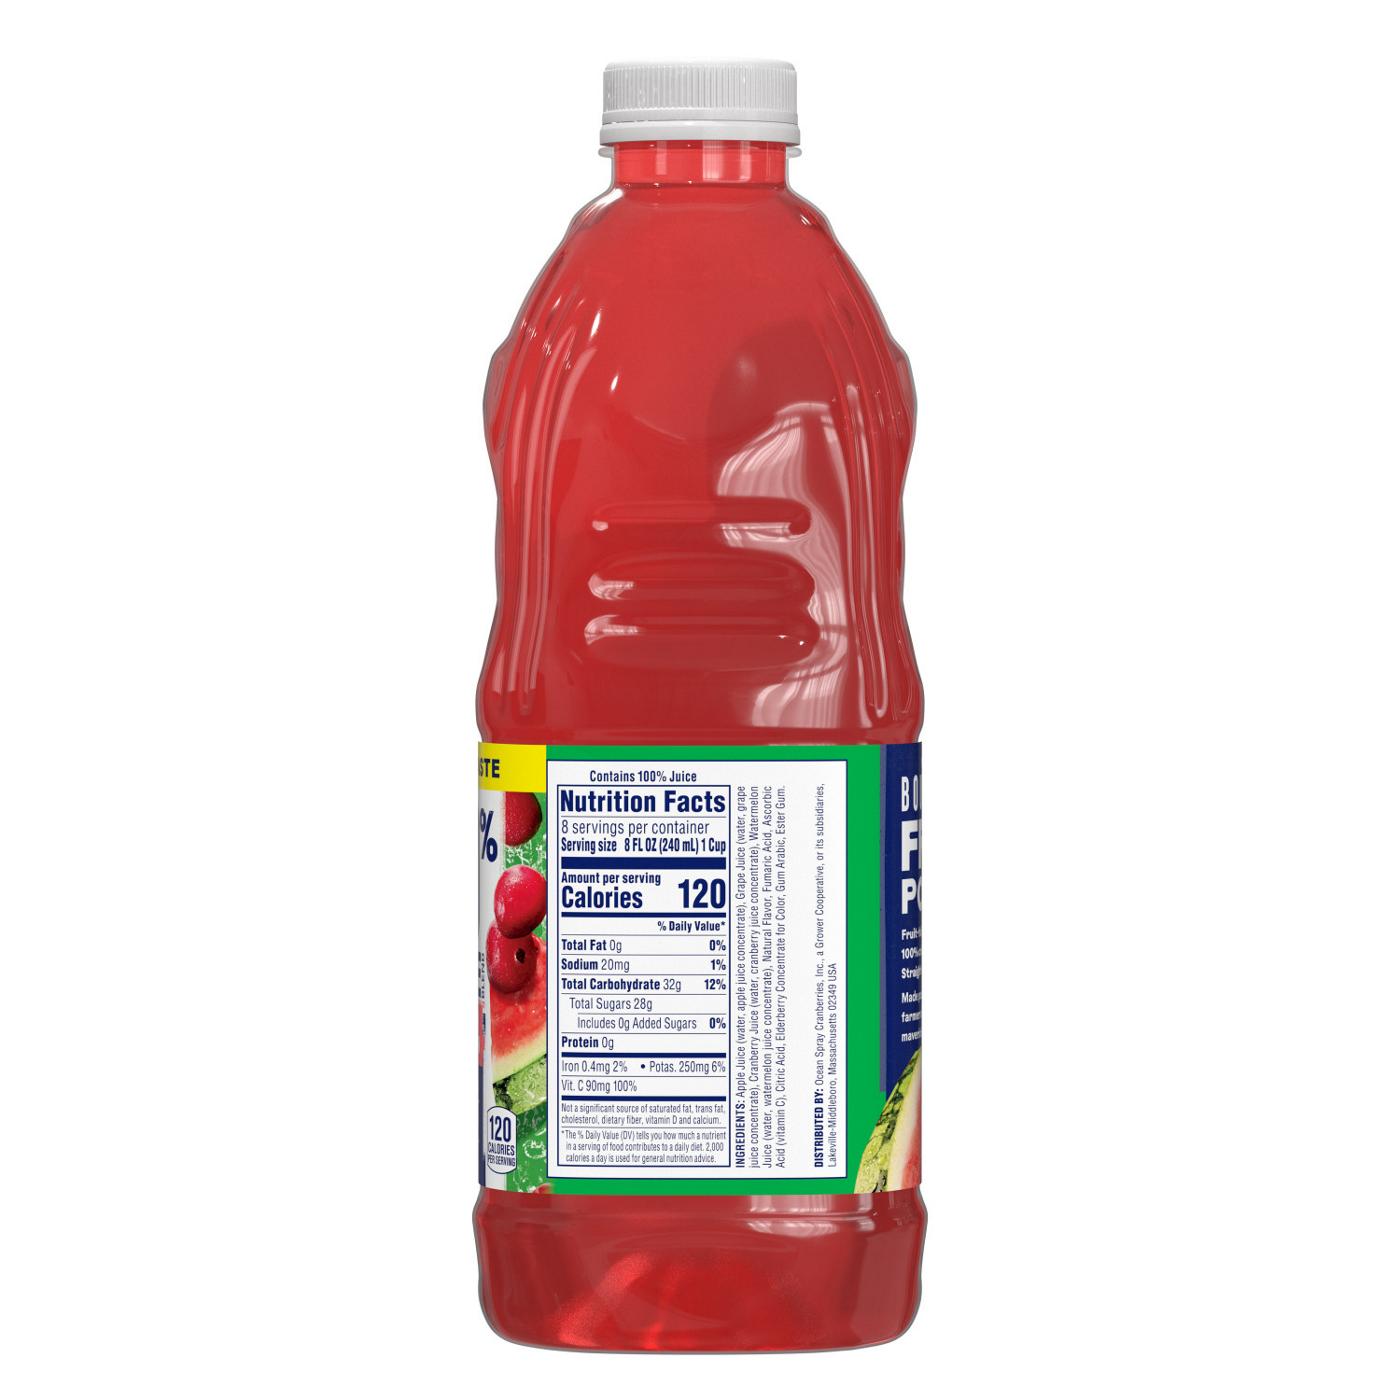 Ocean Spray No Sugar Added 100% Juice Cranberry Watermelon Juice Drink; image 3 of 6